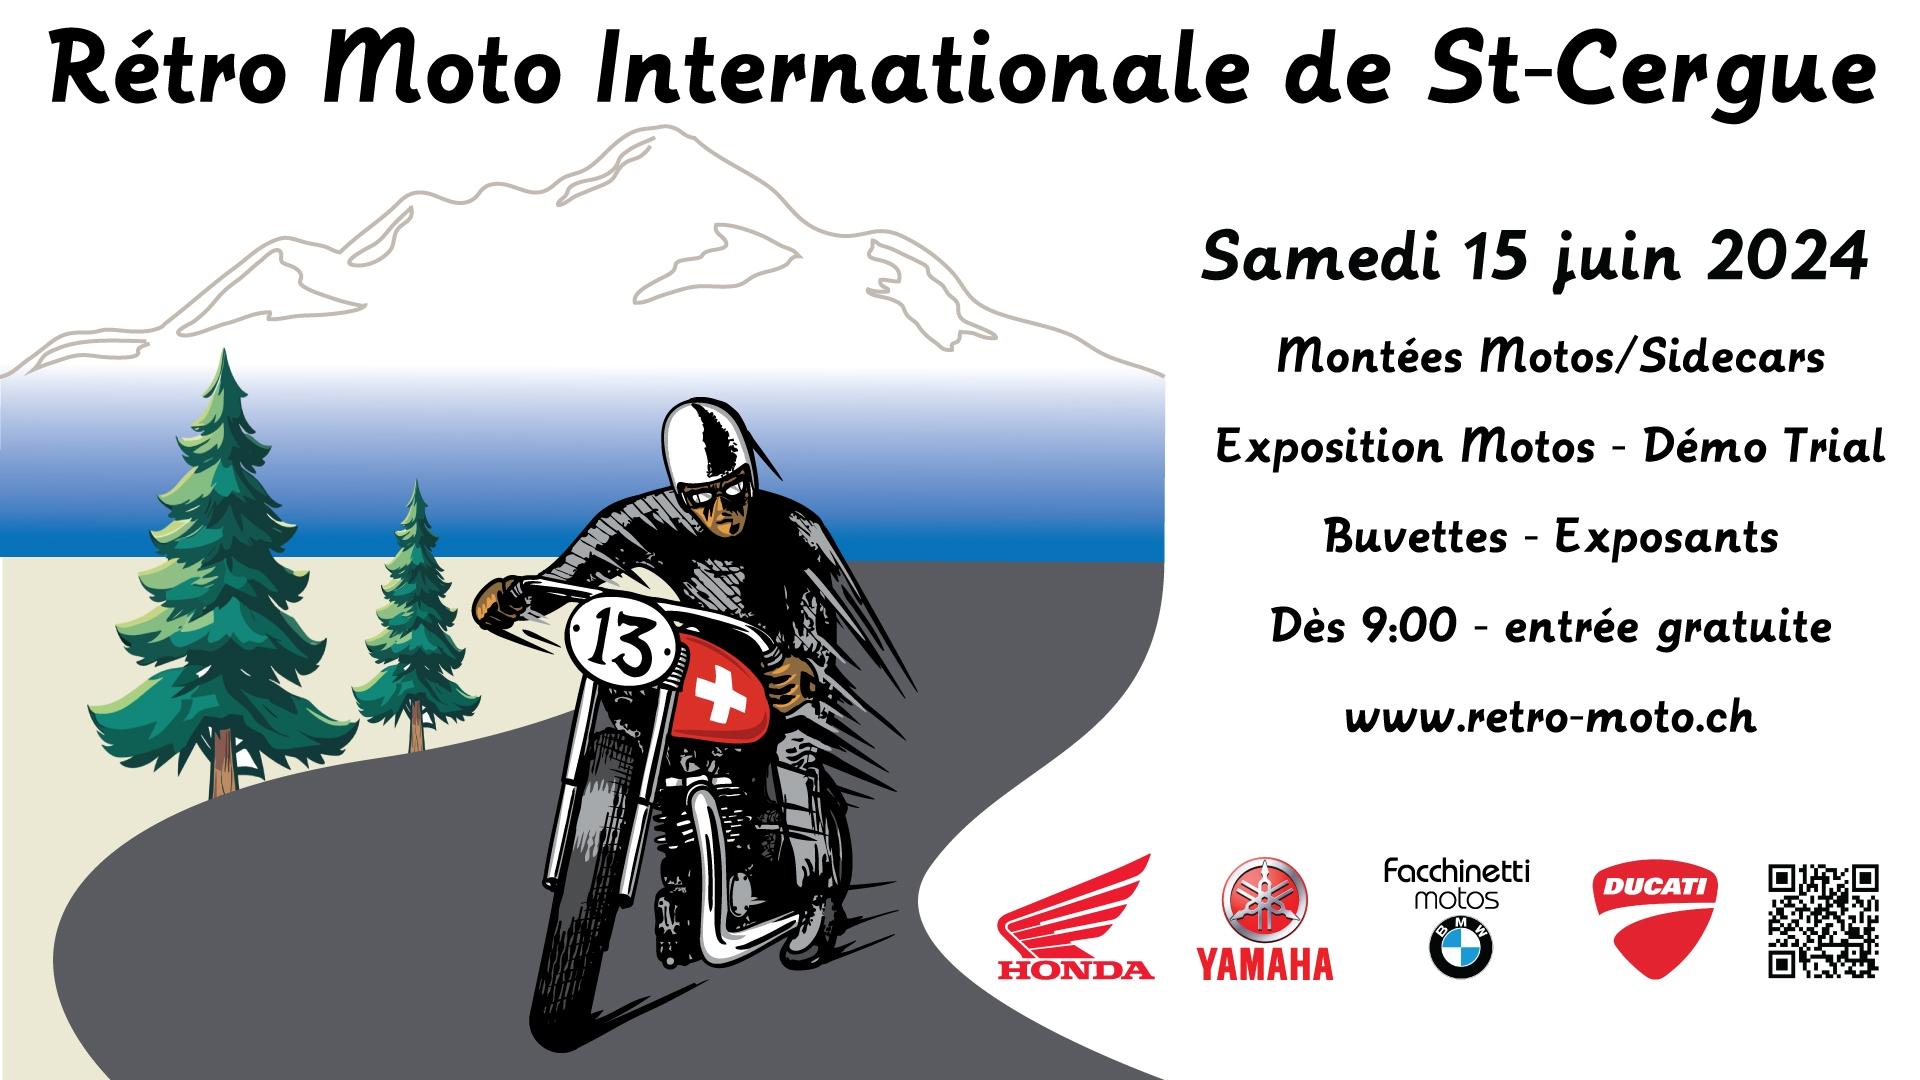 Rétro Moto Internationale de St-Cergue